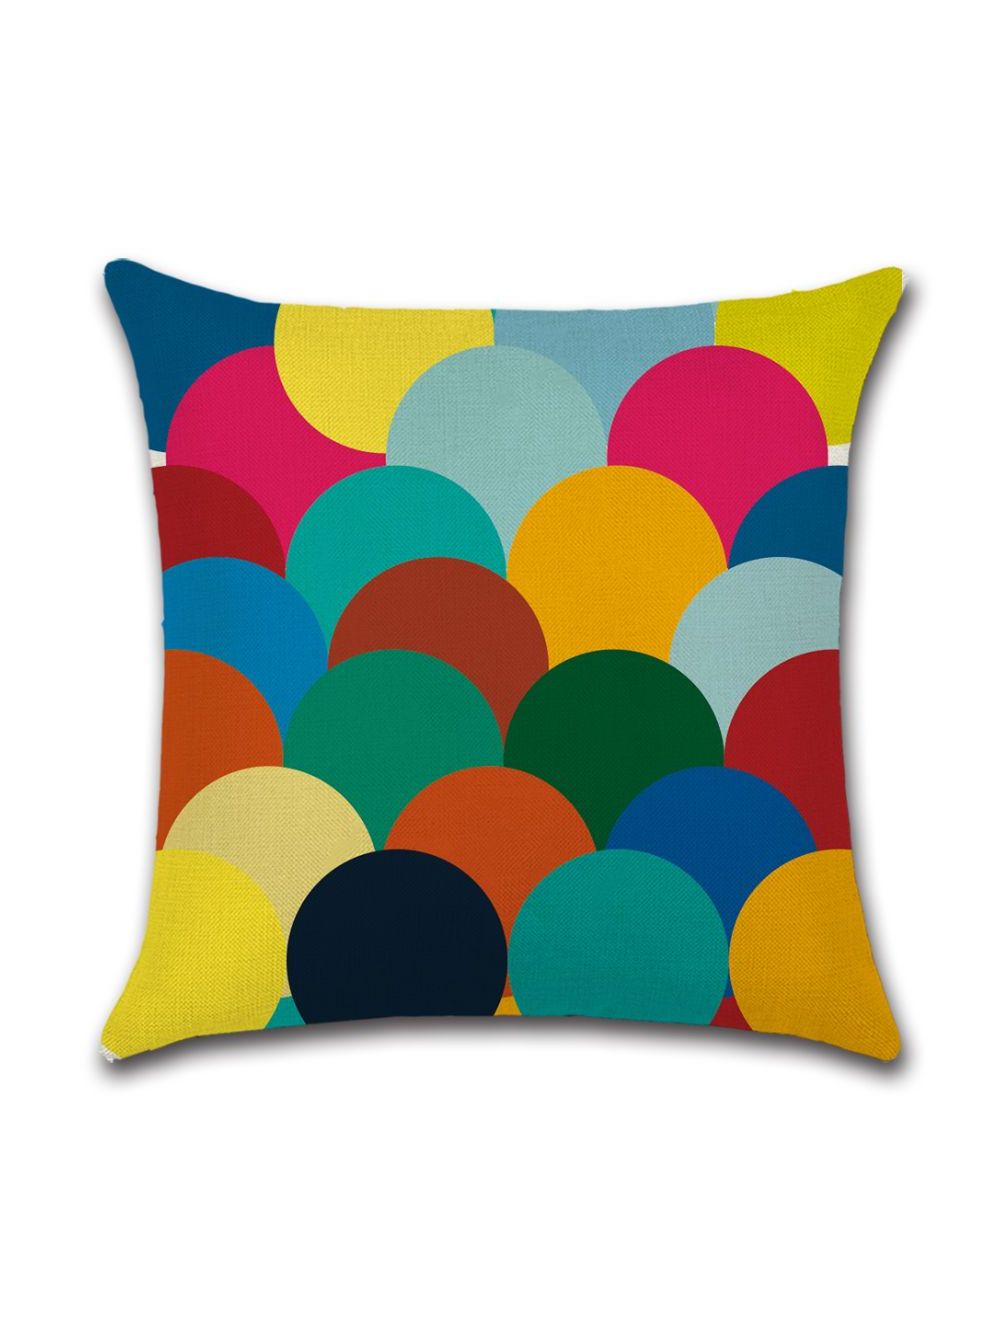 Rishahome Colour Balloon Printed Cushion Cover 45x45 cm-9C114G0011